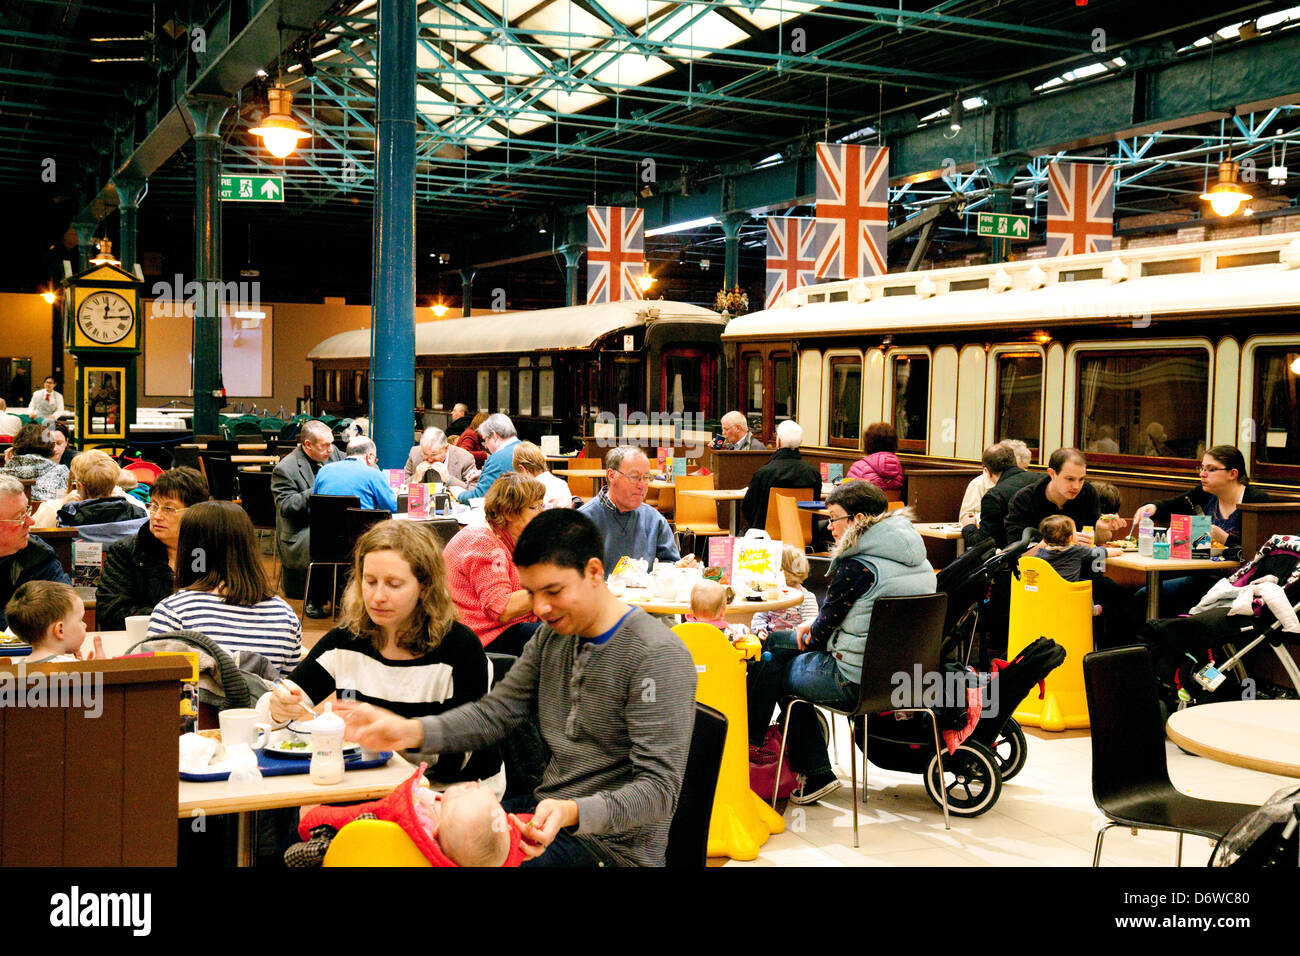 Gente comiendo y bebiendo en el cafe, el National Railway Museum, York, REINO UNIDO Foto de stock